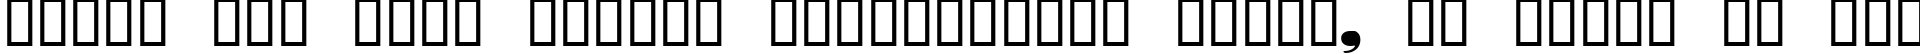 Пример написания шрифтом Nubian Regular текста на русском